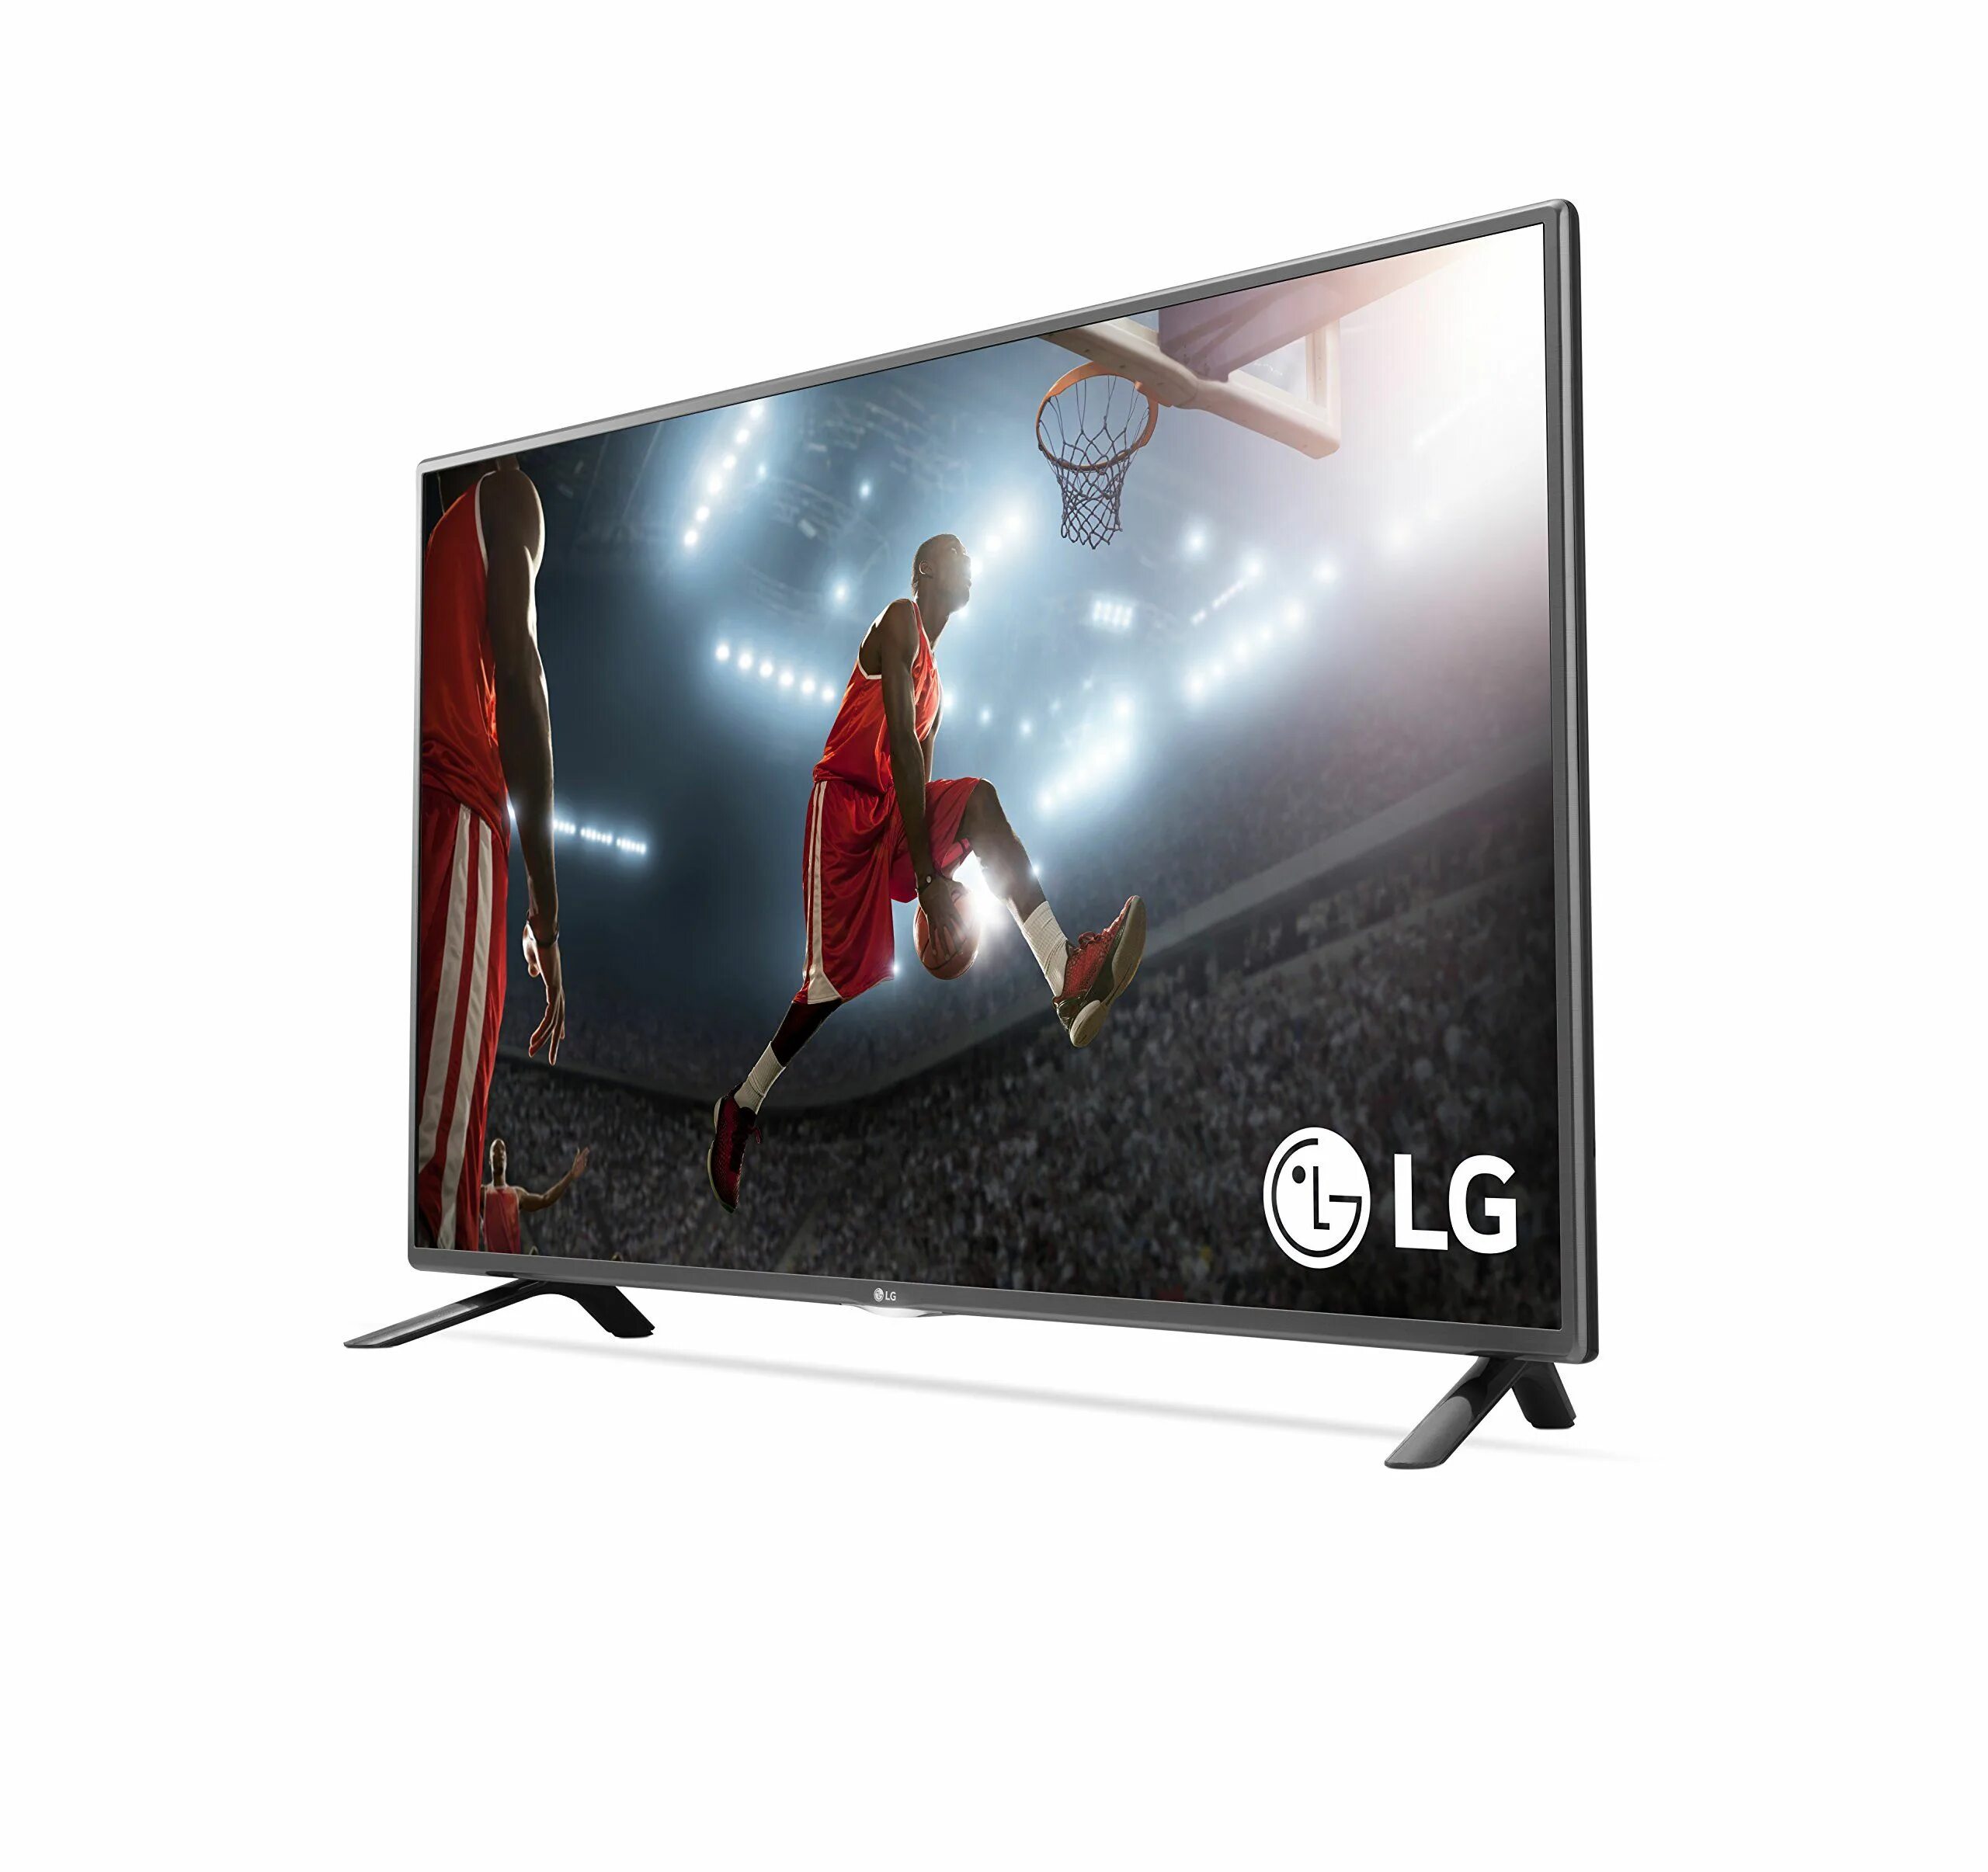 Телевизор lg 2015. LG 32 Smart 2015. LG TV 32 inch 2015. LG Smart TV 2015. LG 32lf5800.